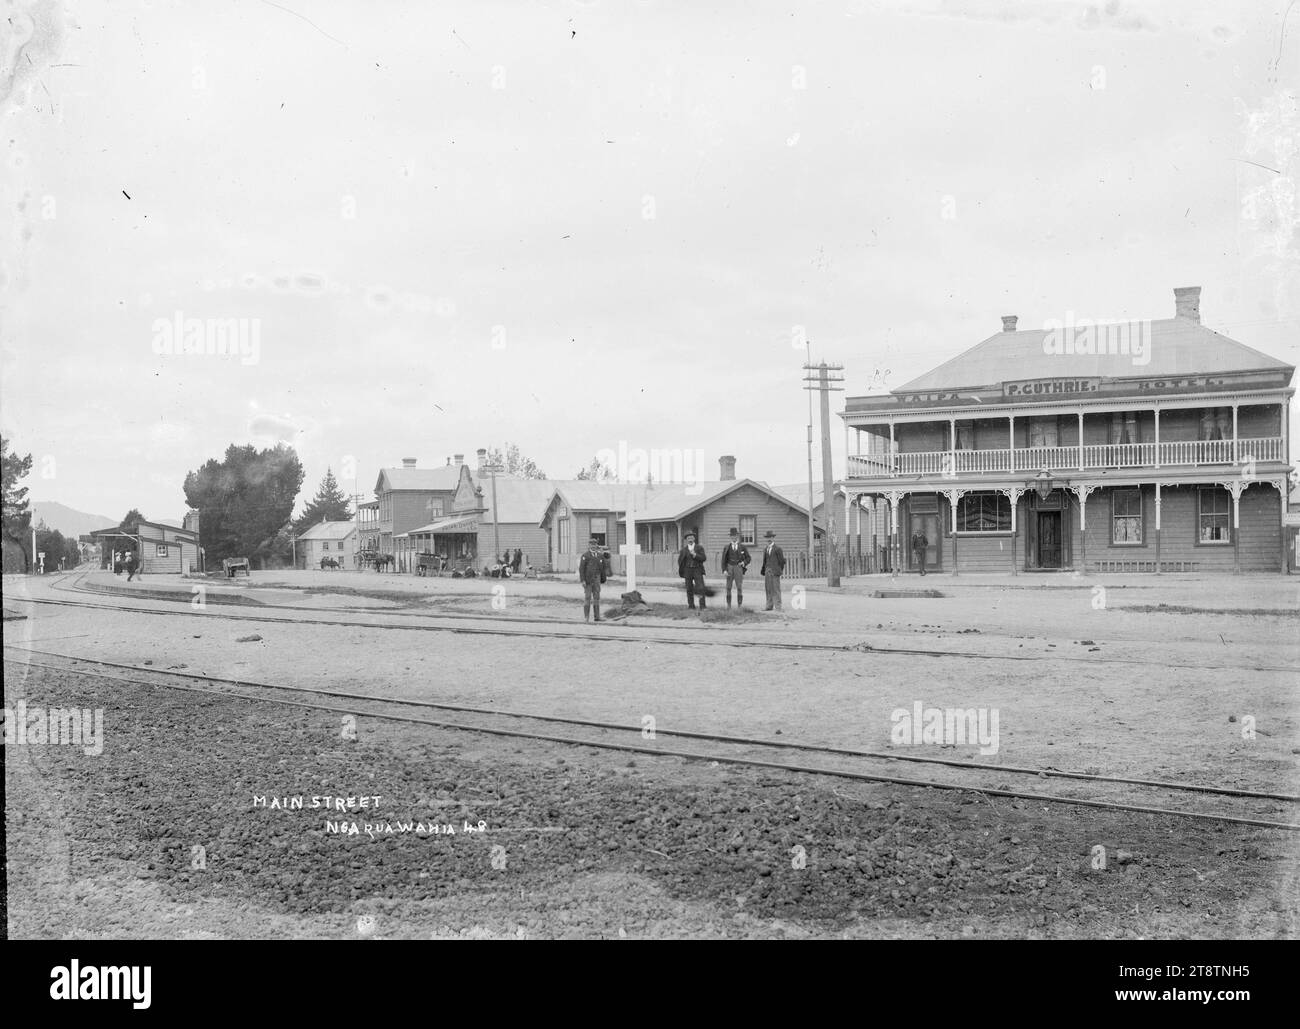 Great South Road in Ngaruawahia, Neuseeland, mit dem Waipa Hotel, ca. 1910, Blick auf das Waipa Hotel in Ngaruawahia, Neuseeland, mit der Bahnhofsmitte links, Bahnlinien, die vor dem Hotel verlaufen, mit der Hauptstraße zwischen der Bahnlinie und dem Hotel um 1910 Stockfoto